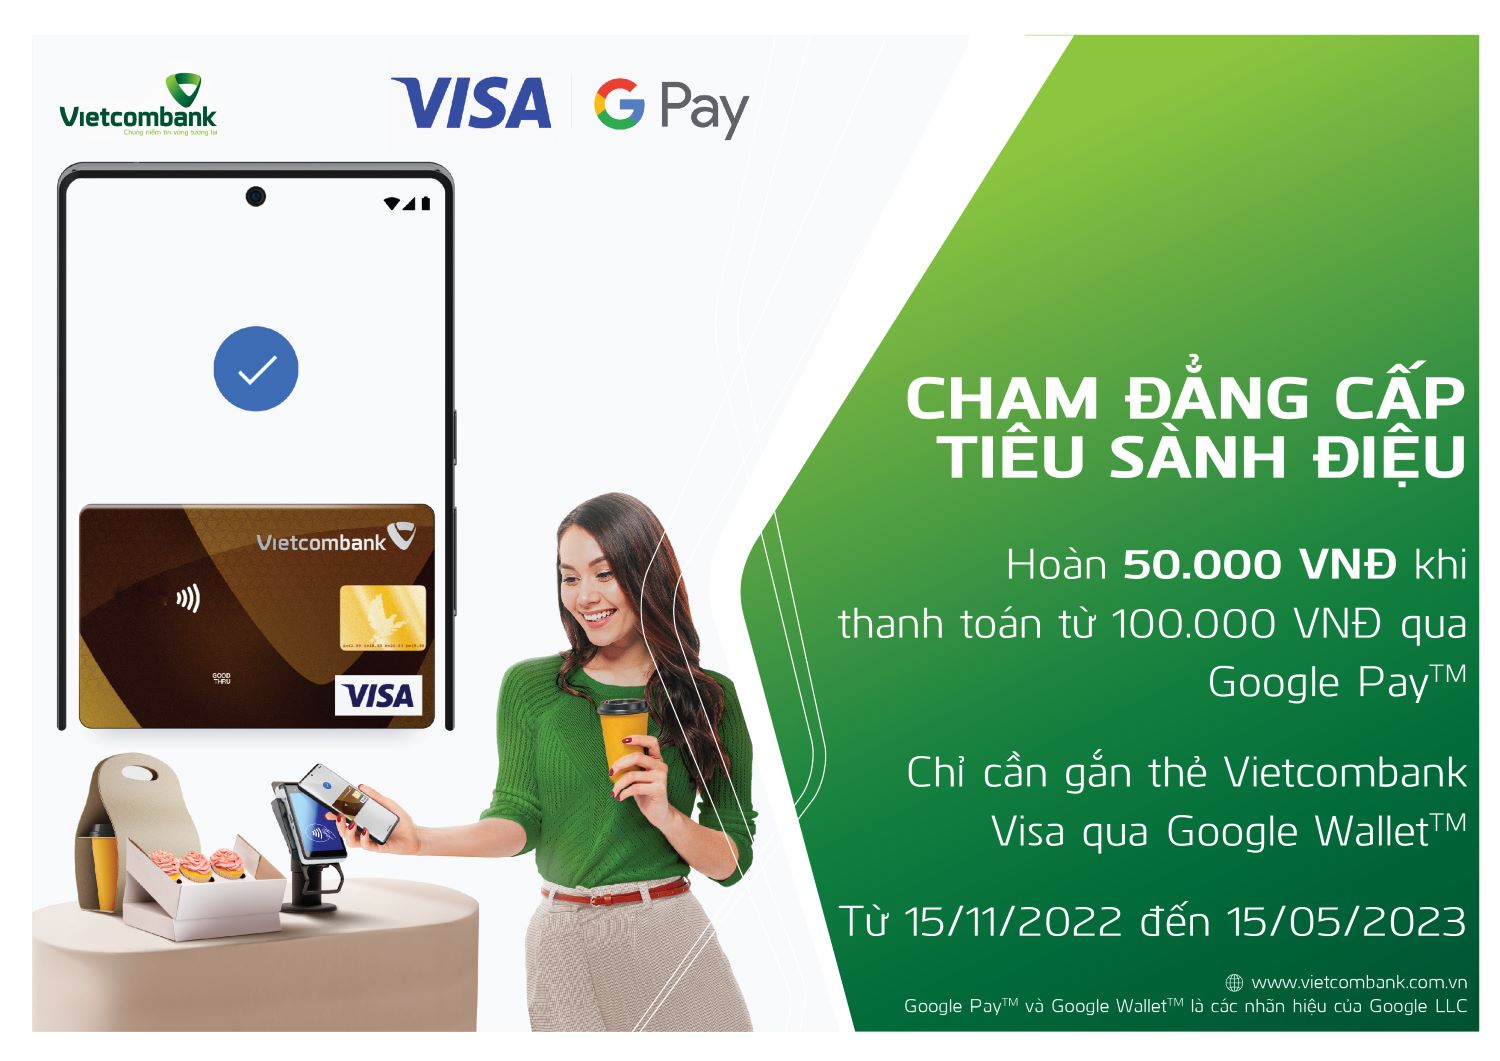 Thông cáo báo chí: Vietcombank chính thức triển khai dịch vụ thanh toán qua Google Wallet cho thẻ Visa